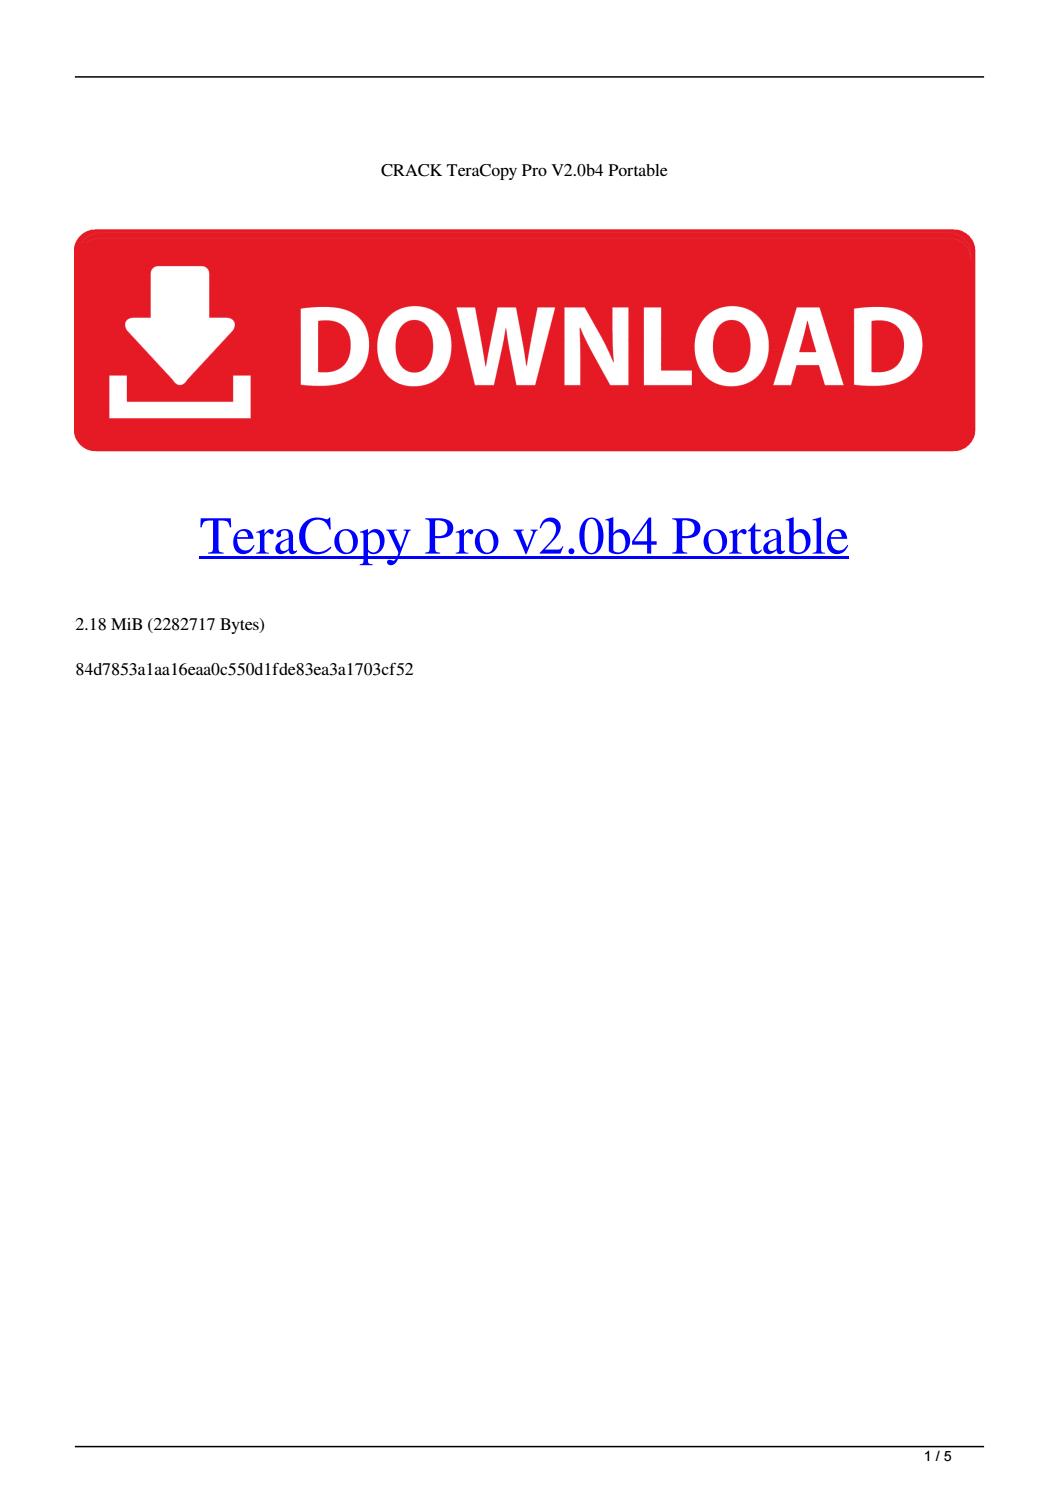 Teracopy pro downloadha